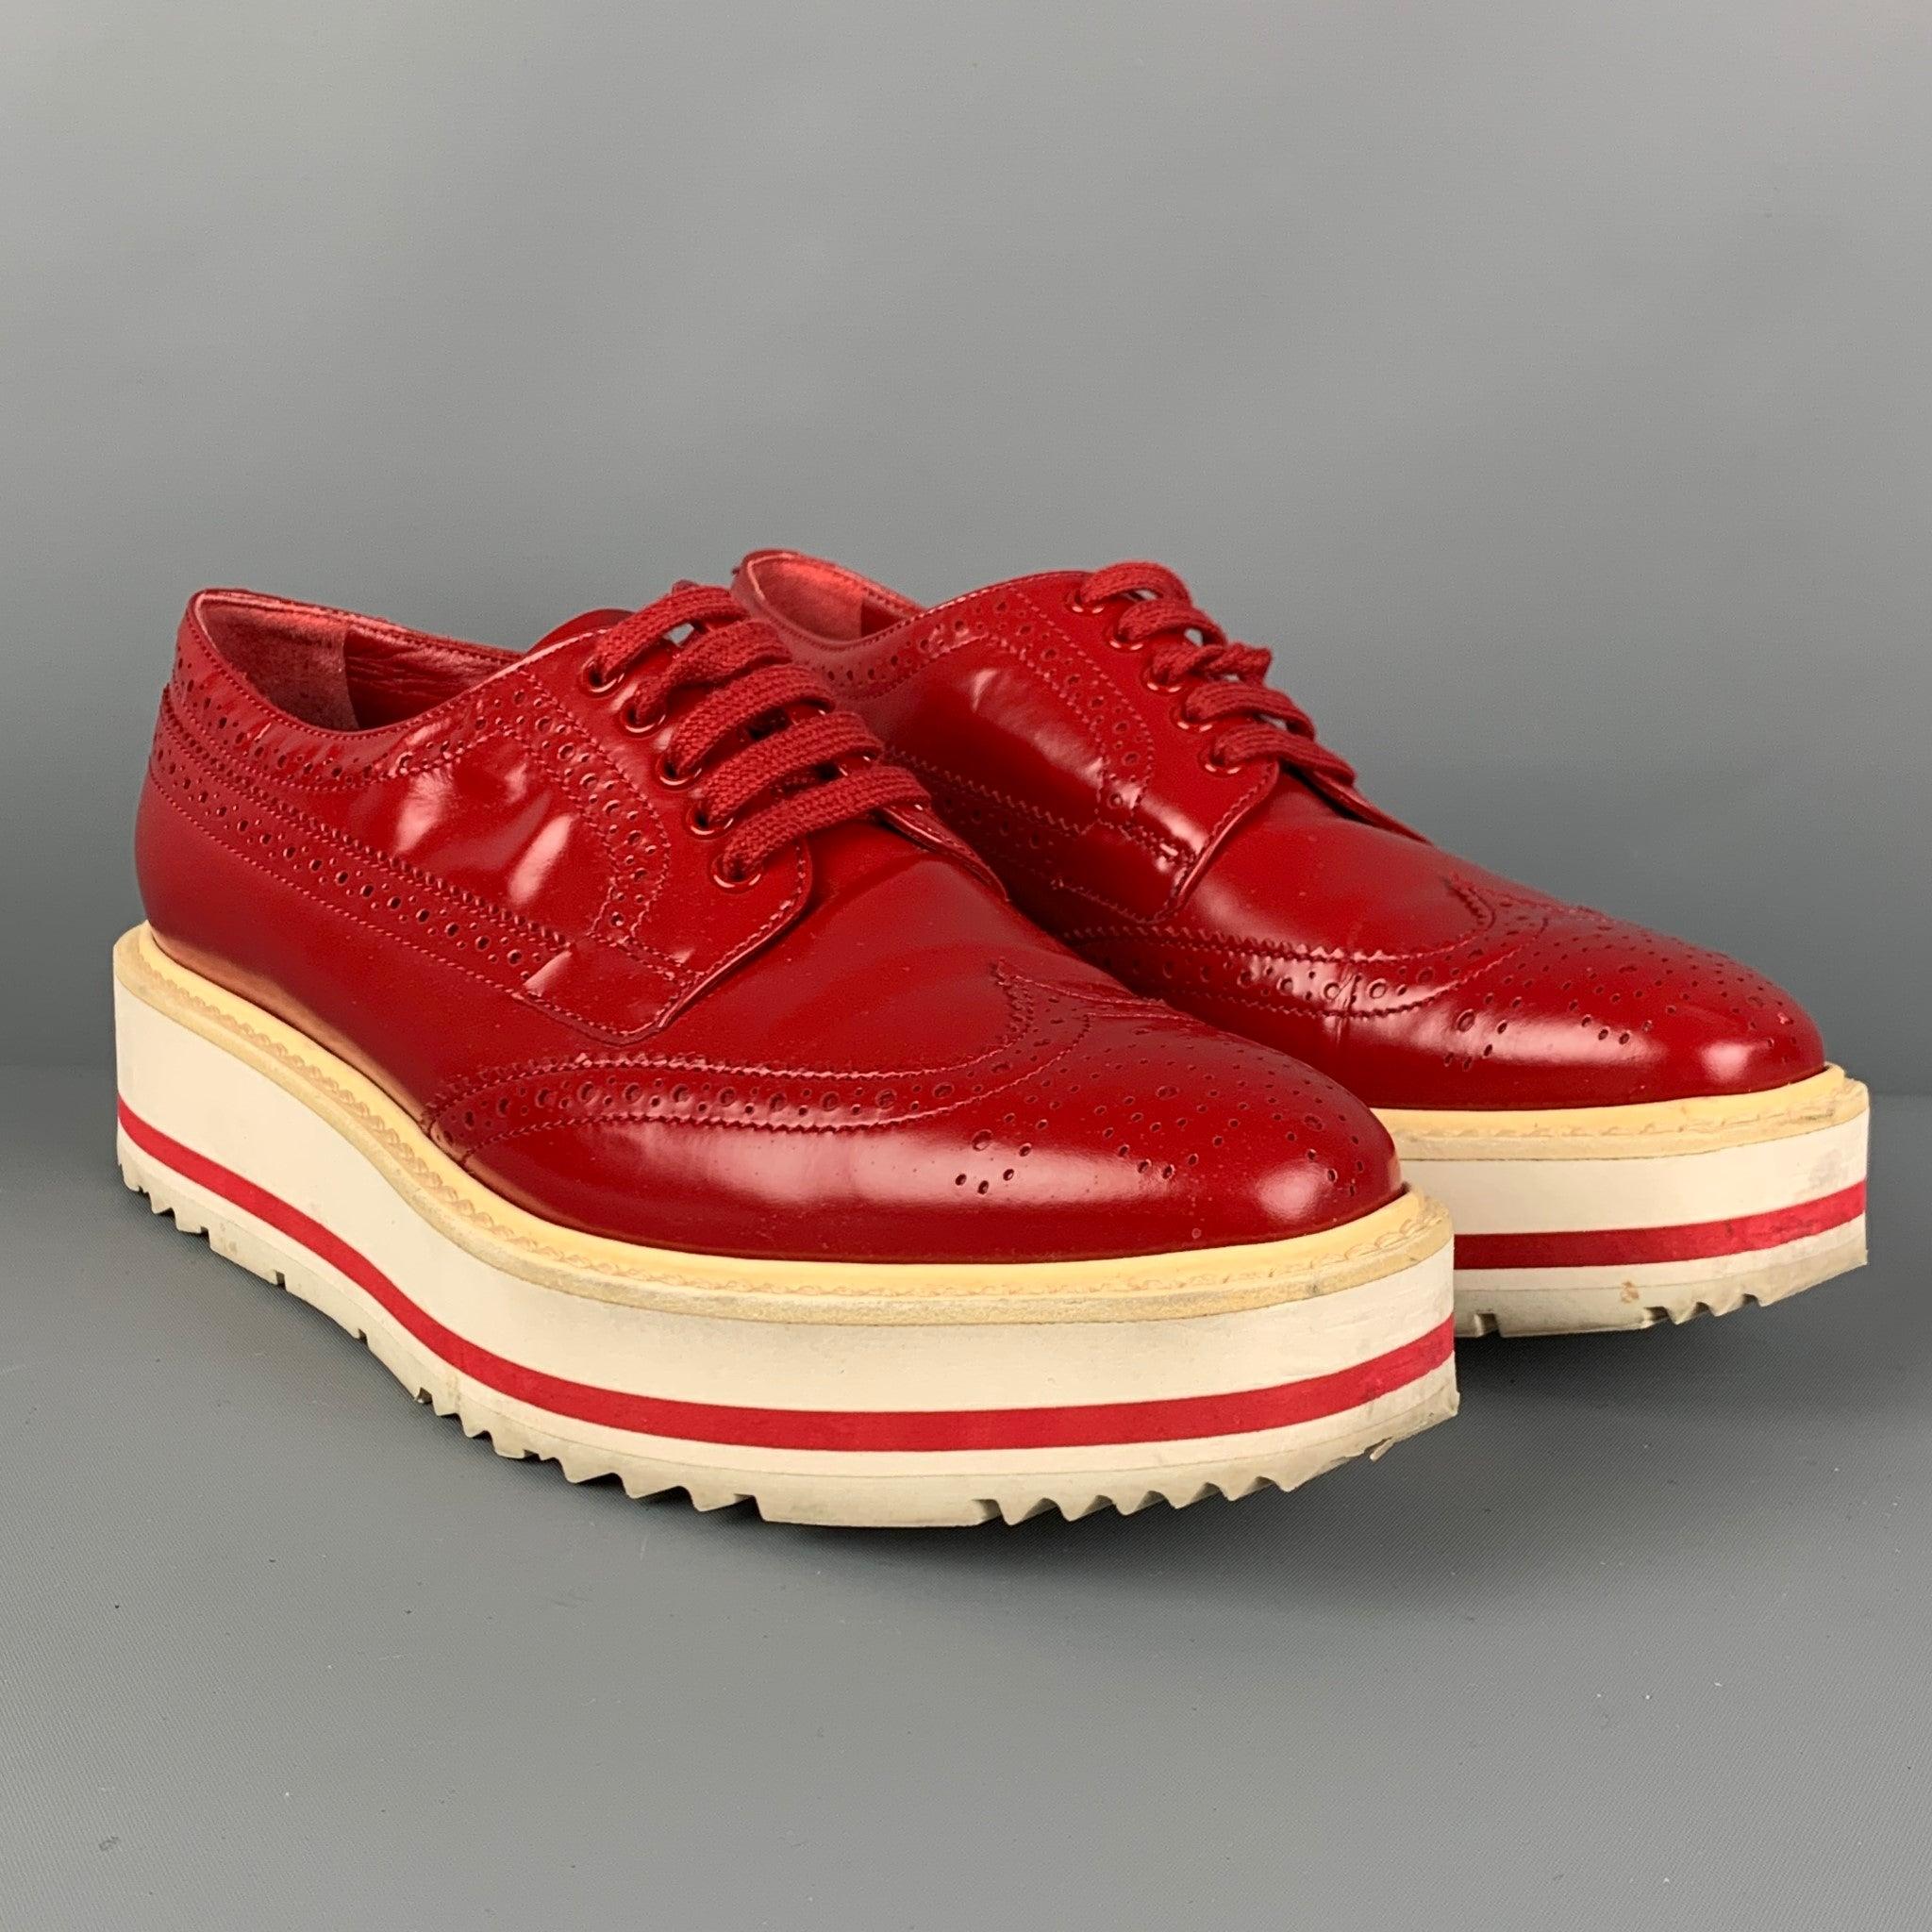 Les chaussures PRADA sont en cuir perforé rouge et blanc et présentent un style à bouts d'aile, une semelle compensée en caoutchouc et une fermeture à lacets.
Très bien
Etat d'occasion. 

Marqué :   36Semelle d'usure : 10.5 x 3.5 pouces 
  
  
